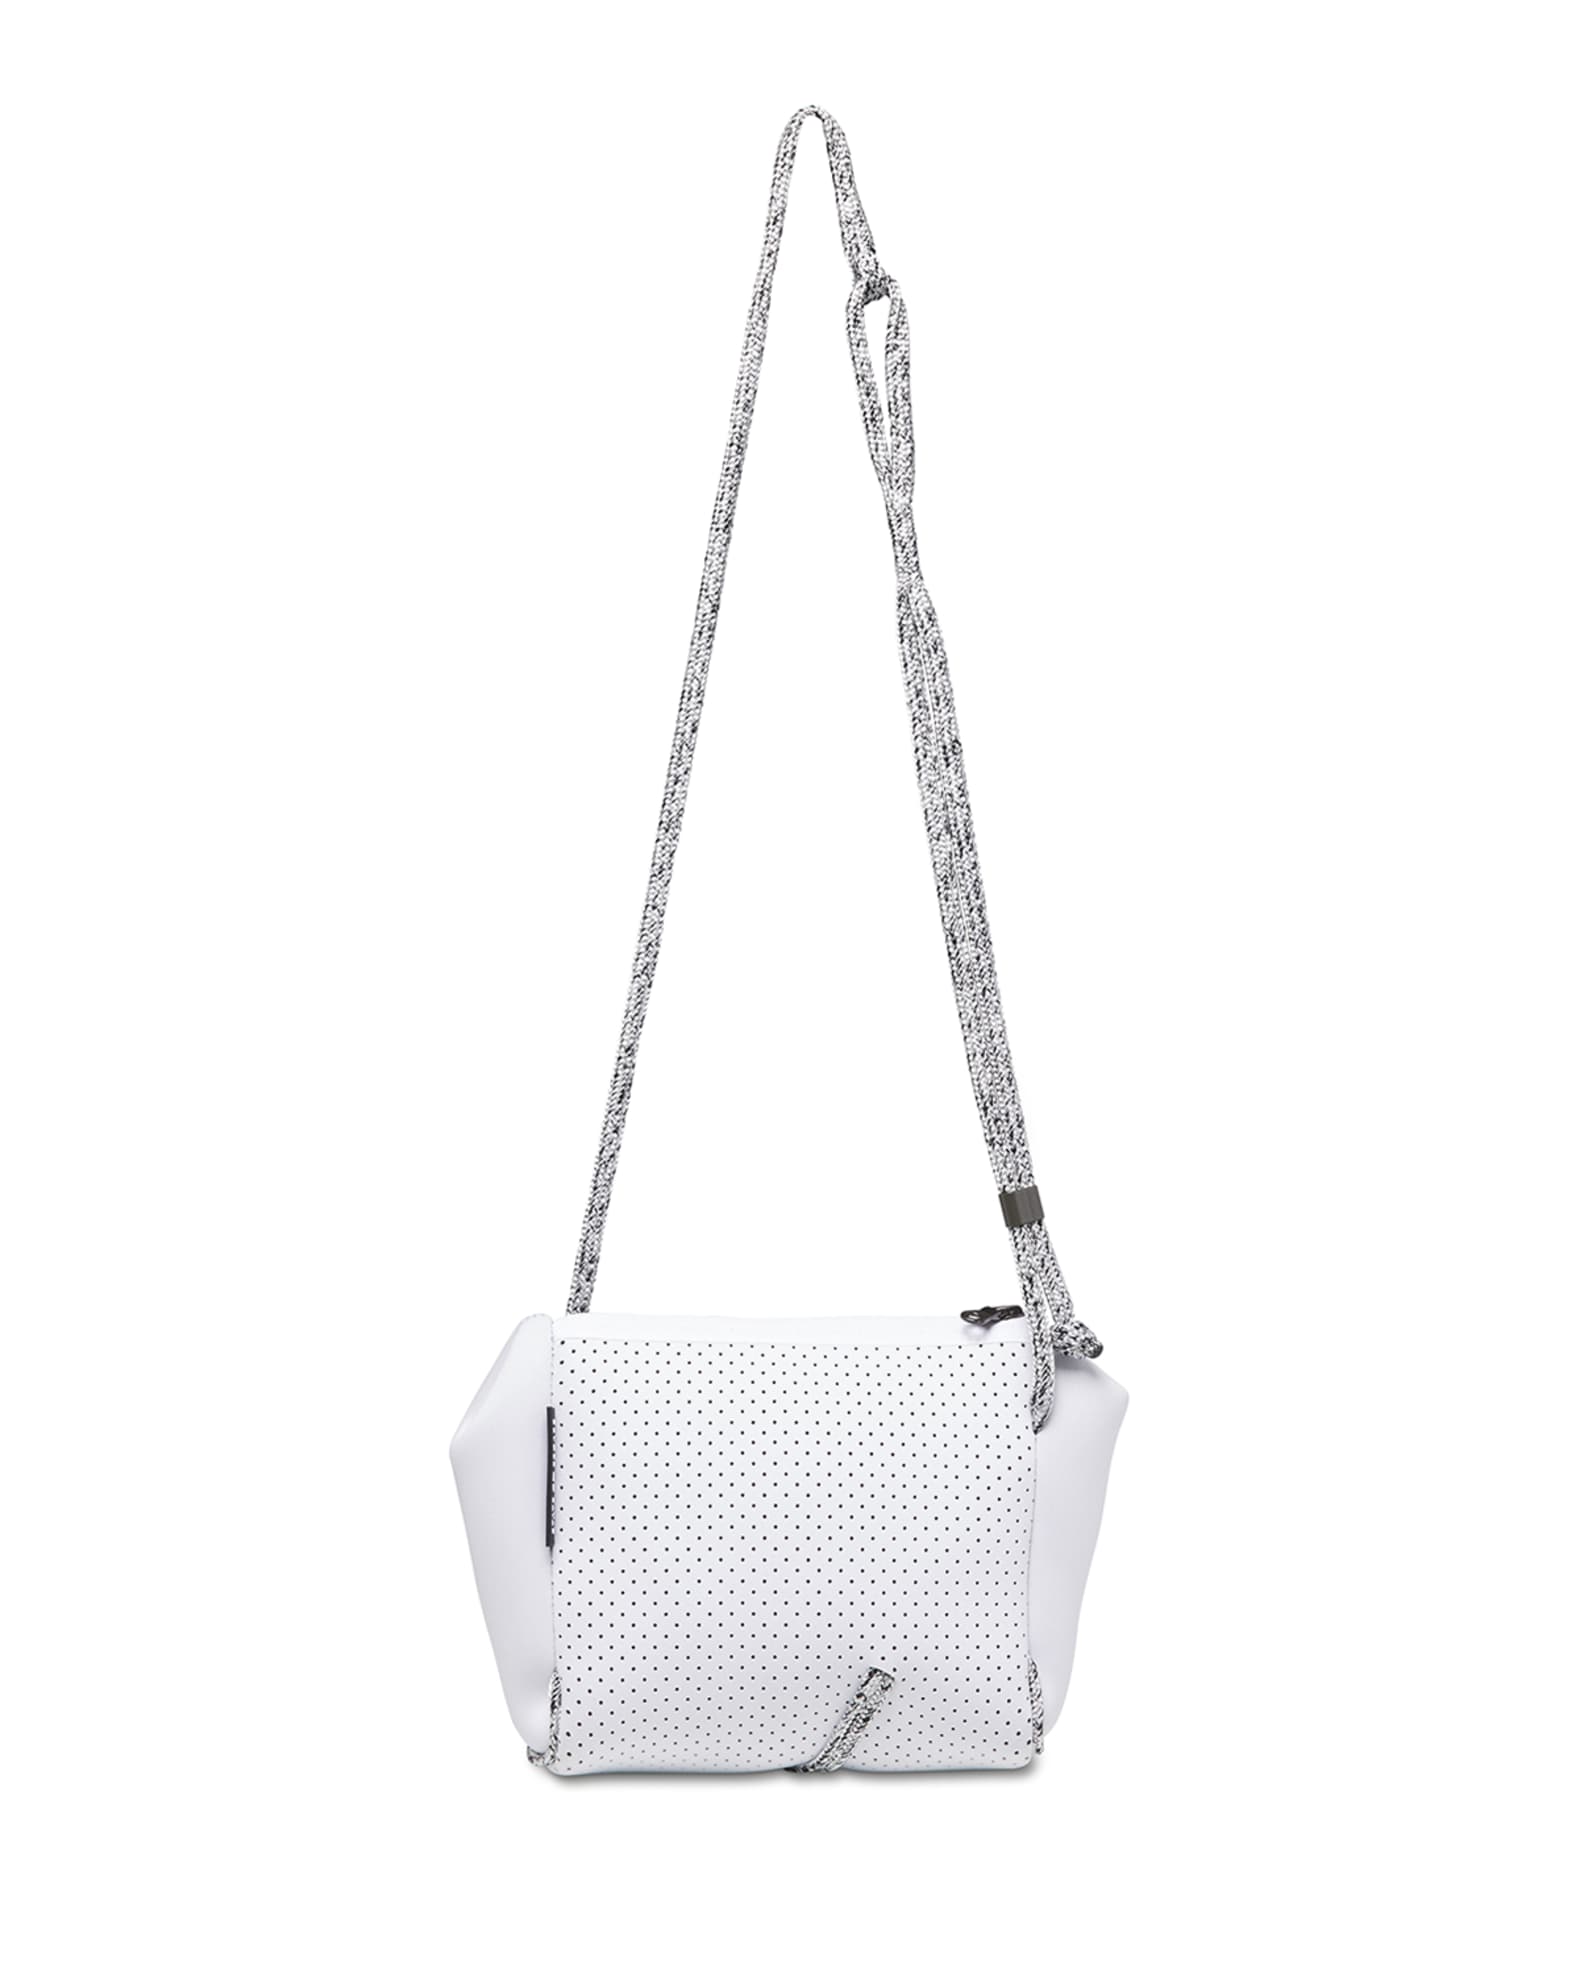 State of Escape Festival Mini Crossbody Bag, White | Neiman Marcus